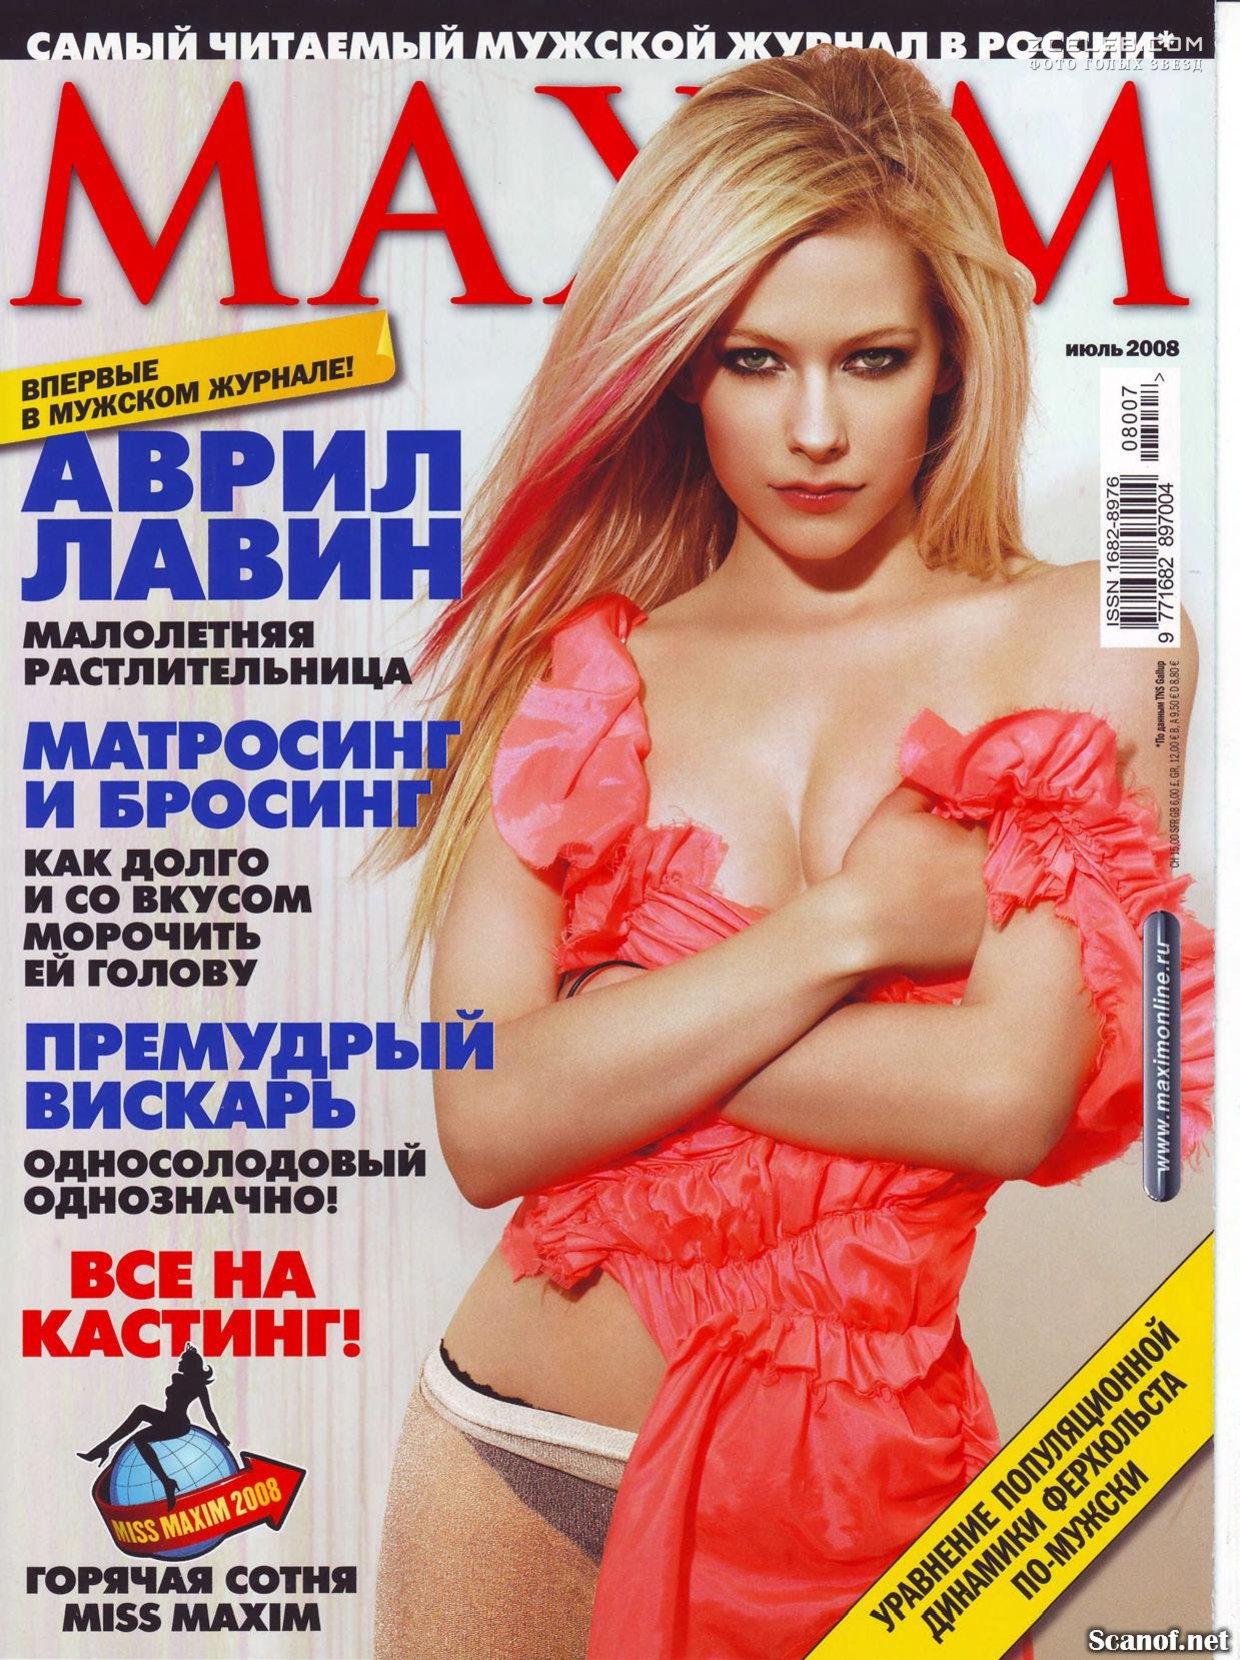 'xxx video porno da avril lavigne gozando' Search - grantafl.ru